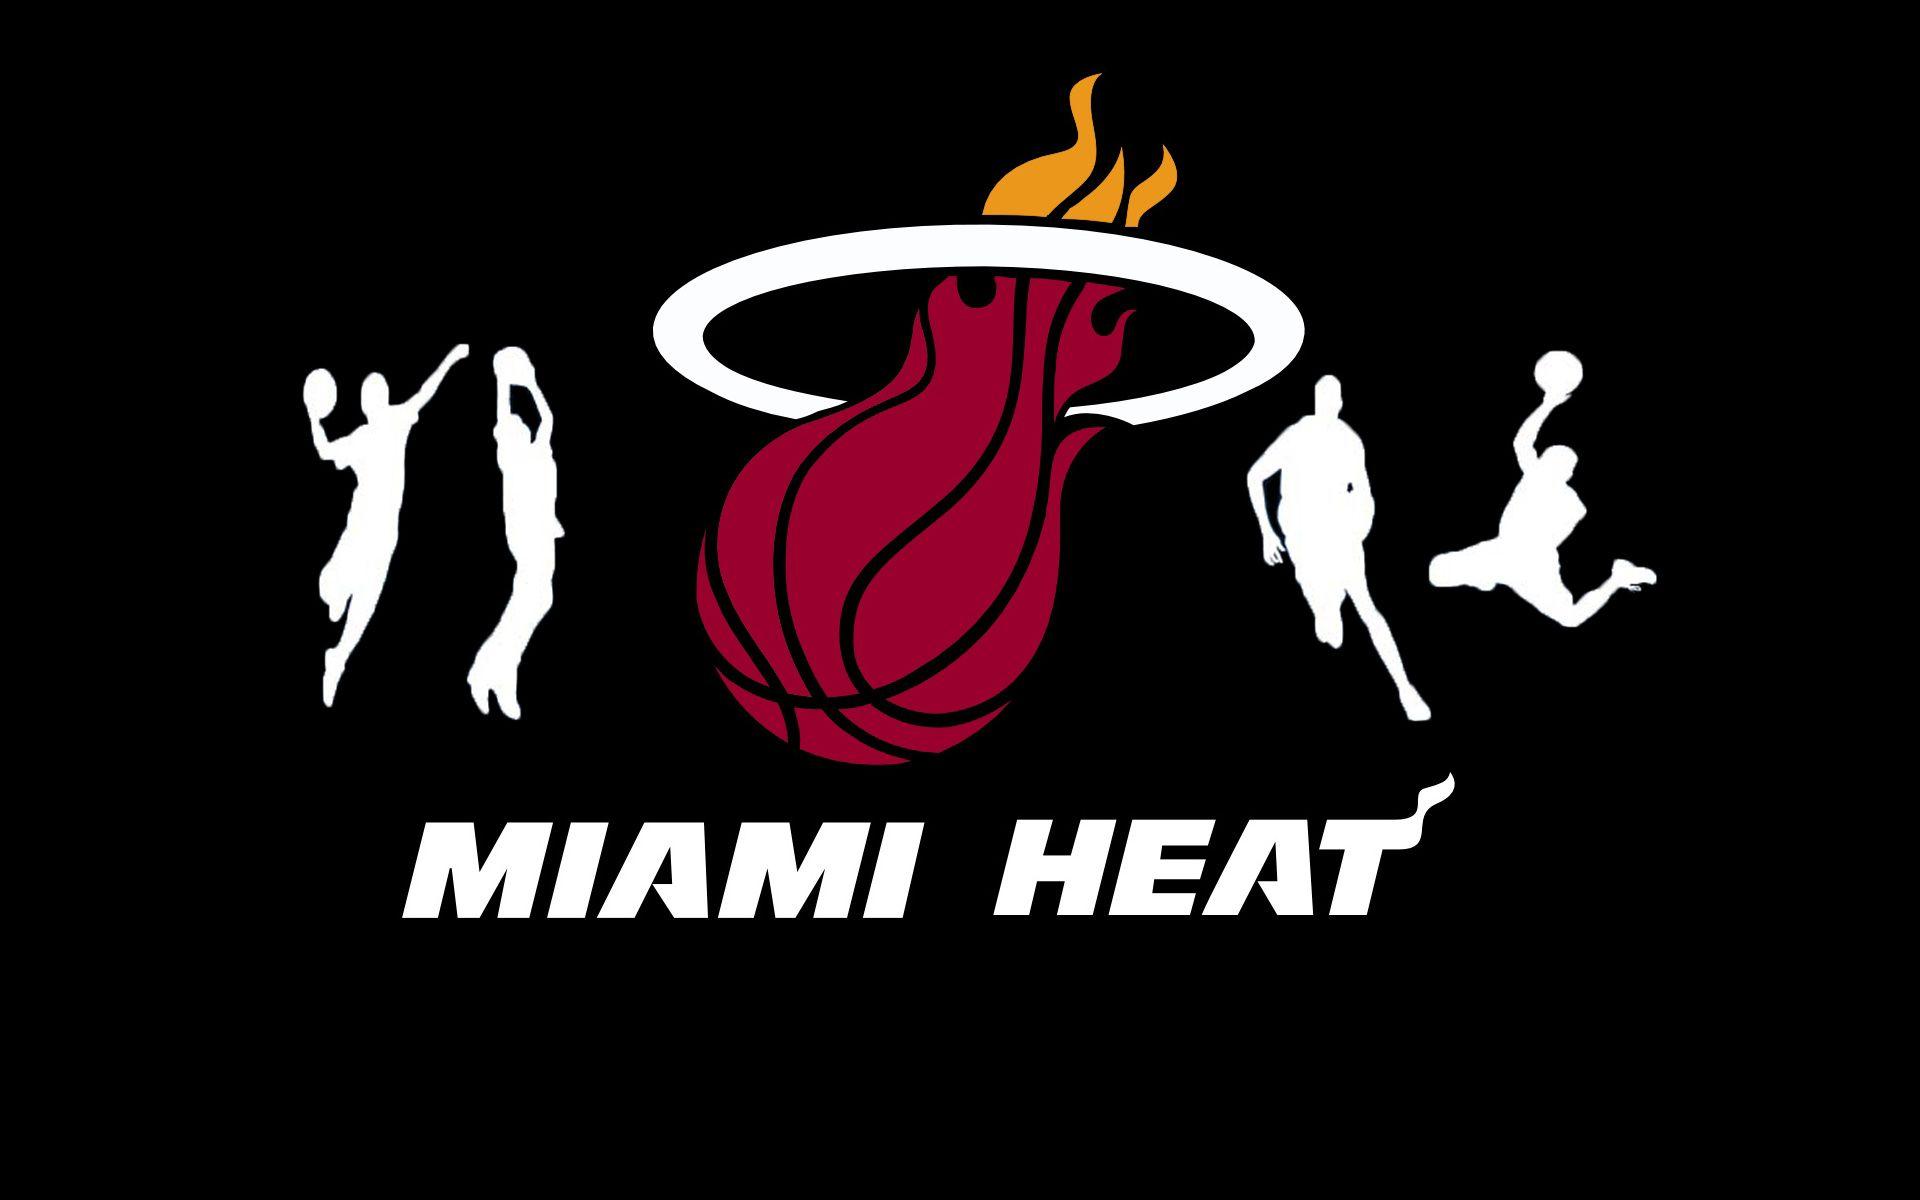 Miami Heat Logo 50 87812 Image HD Wallpaper. Wallfoy.com (한국어)